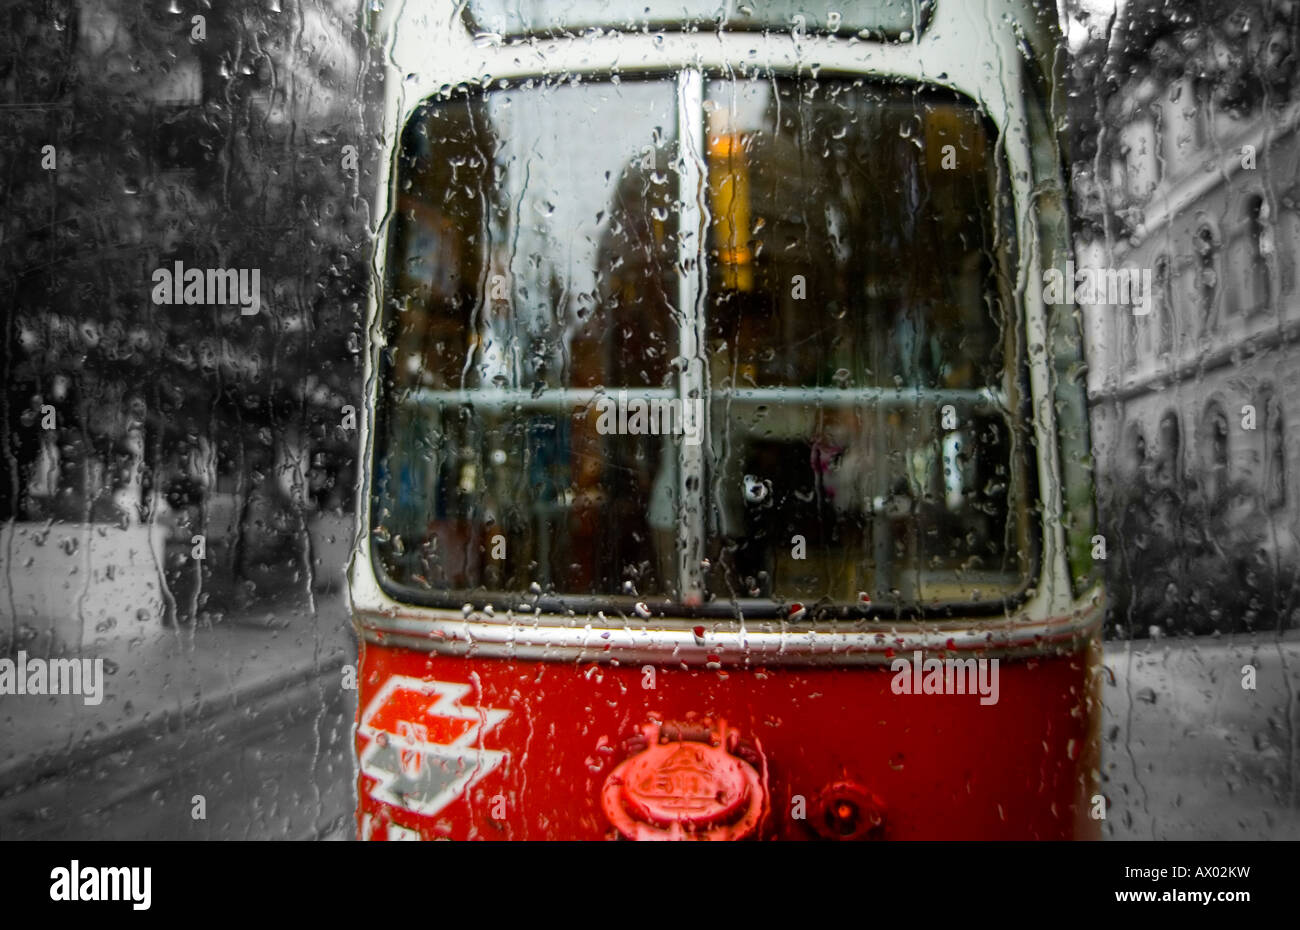 Un tram qui traversent une rue bordée d'un jour de pluie à Vienne, Autriche. Banque D'Images